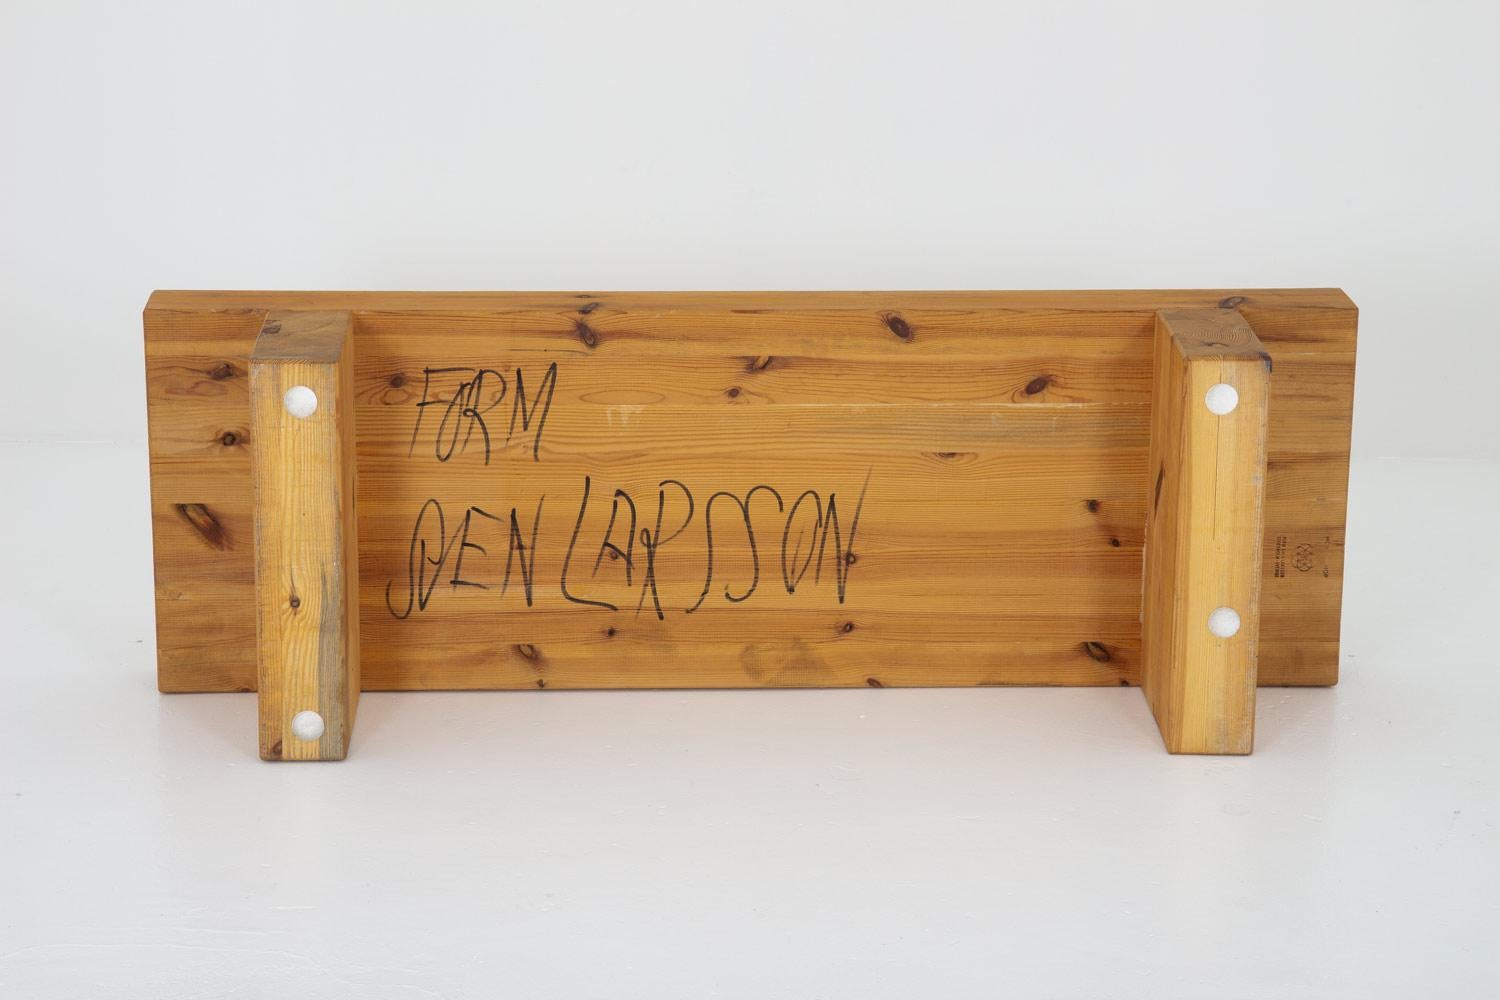 Sven Larsson ist einer der schwedischen Pioniere der Ära der robusten Kiefernmöbel, die in den späten 1960er Jahren begann und in den 1970er Jahren populär wurde. Mit viel Gespür für Details und Qualität gehören seine Stücke zu den besten ihrer